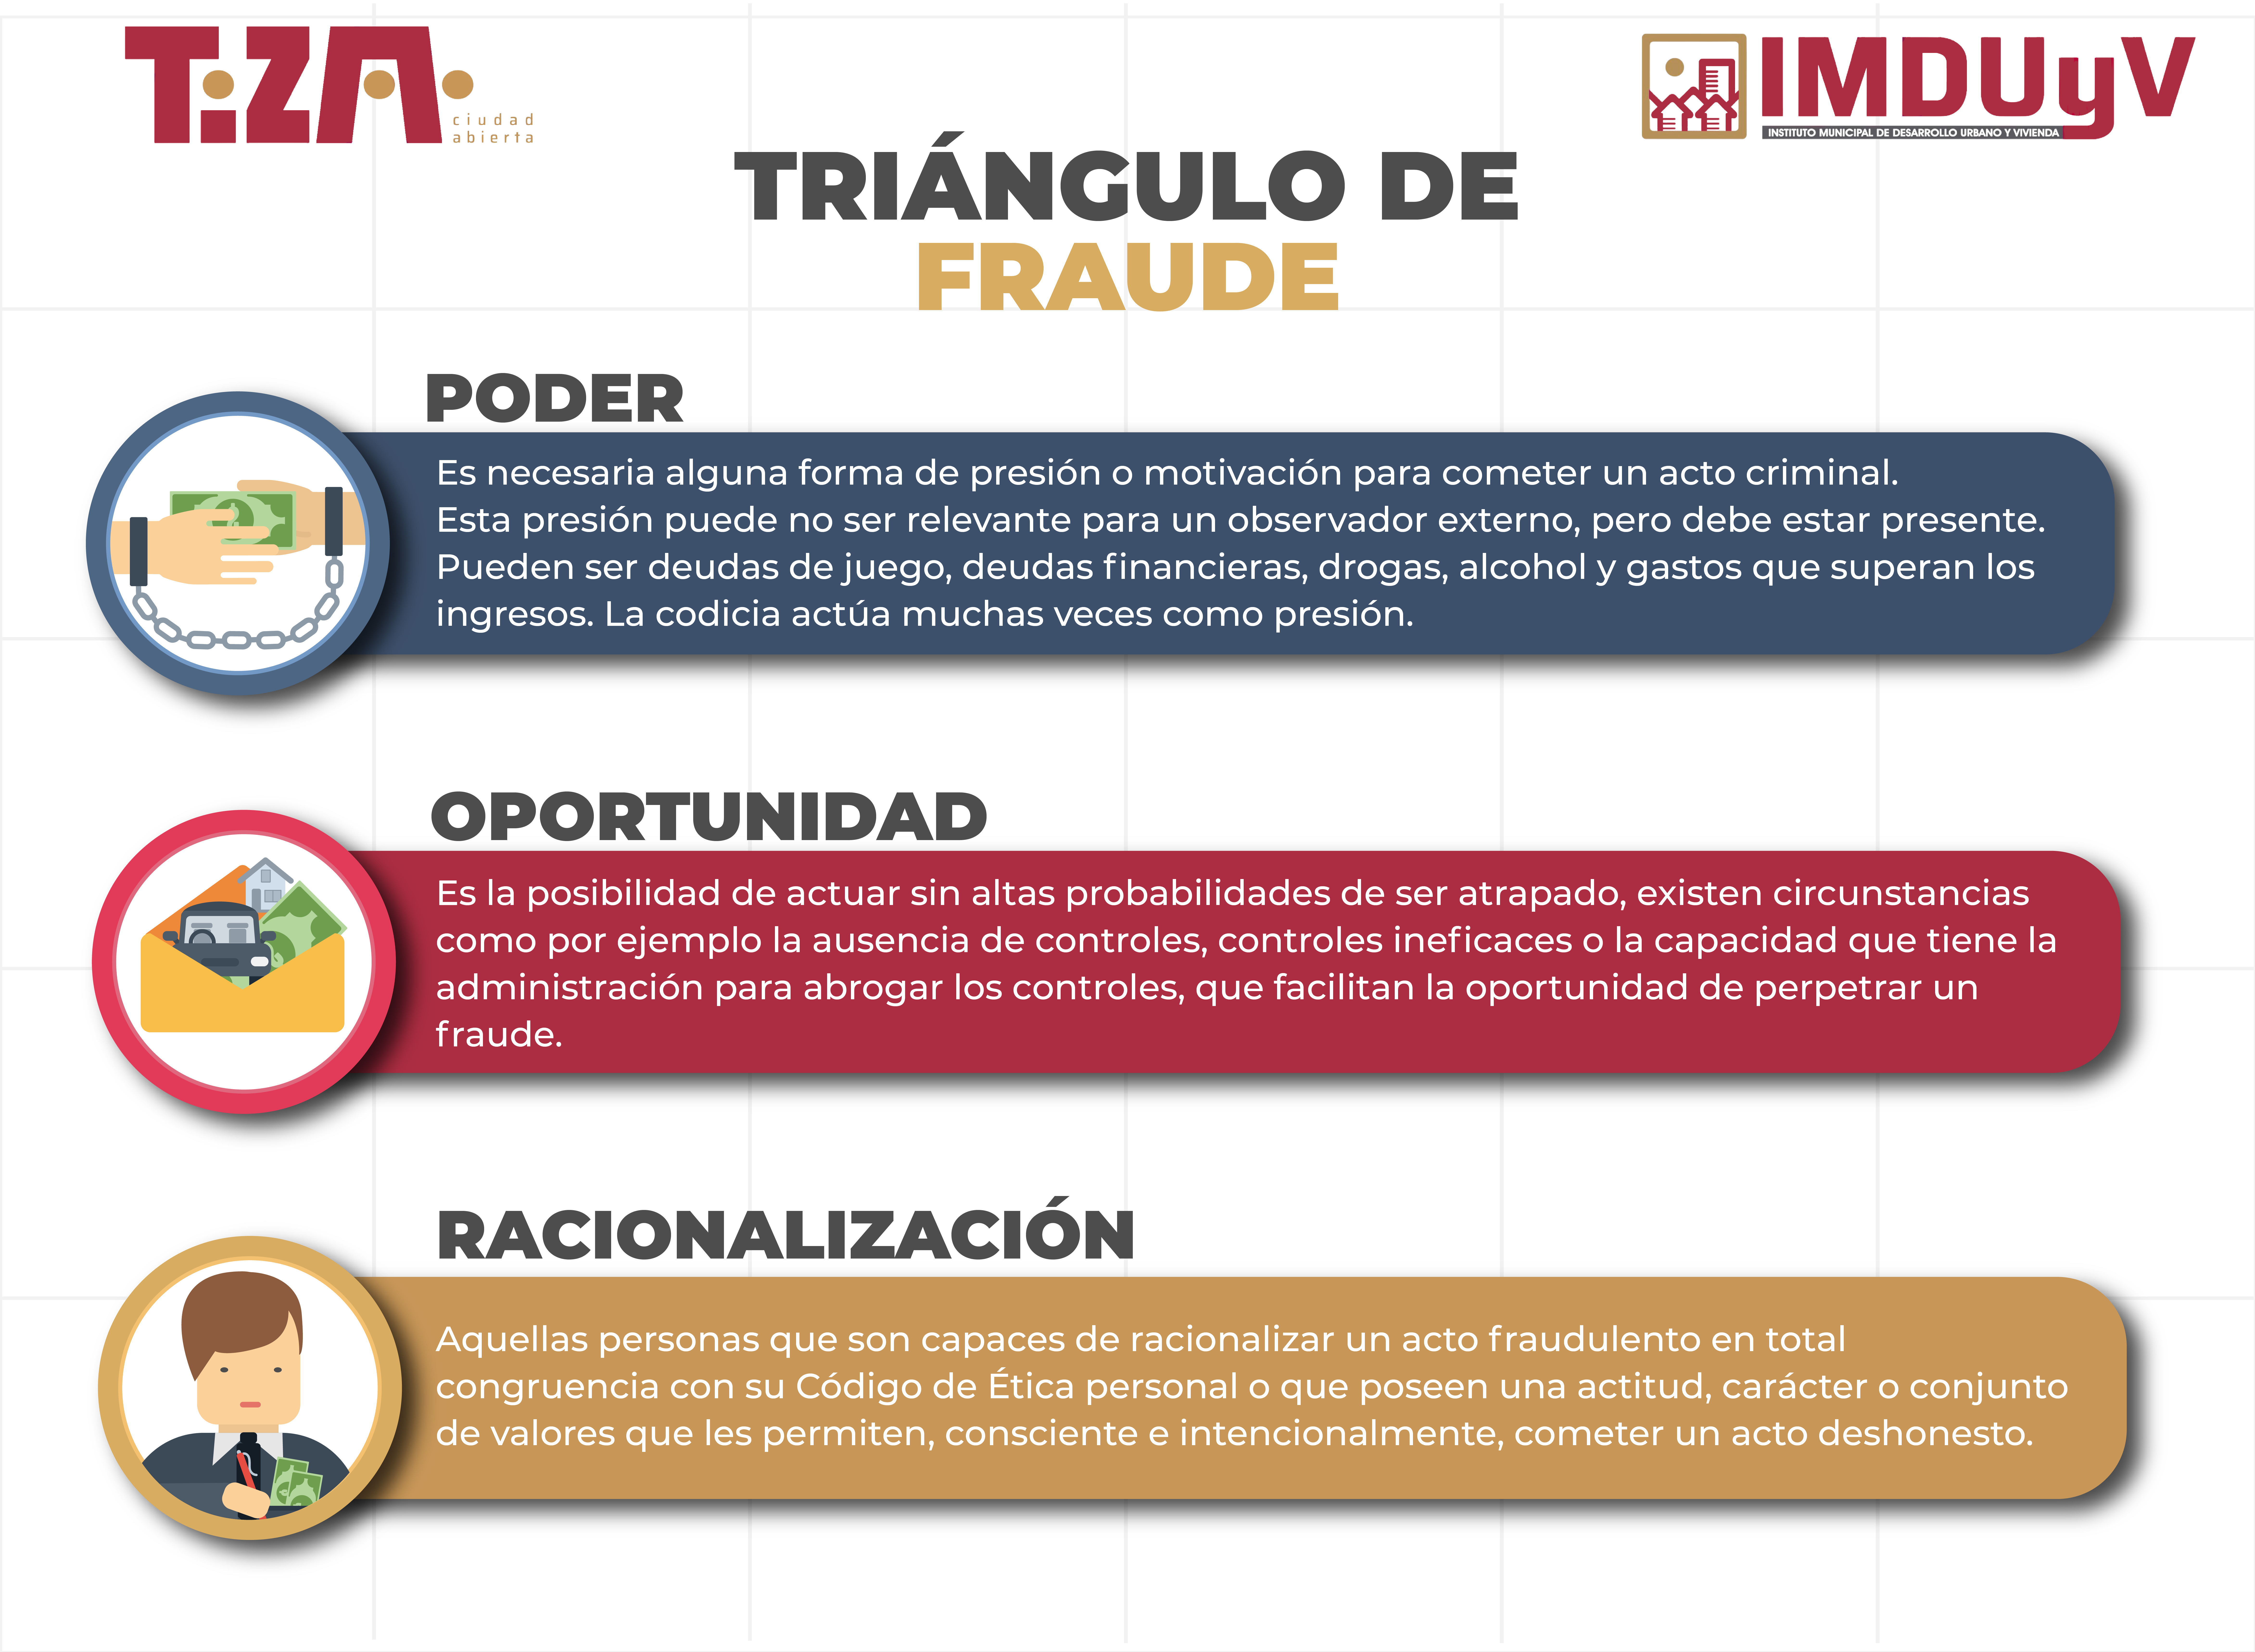 Triángulo de fraude pt.2